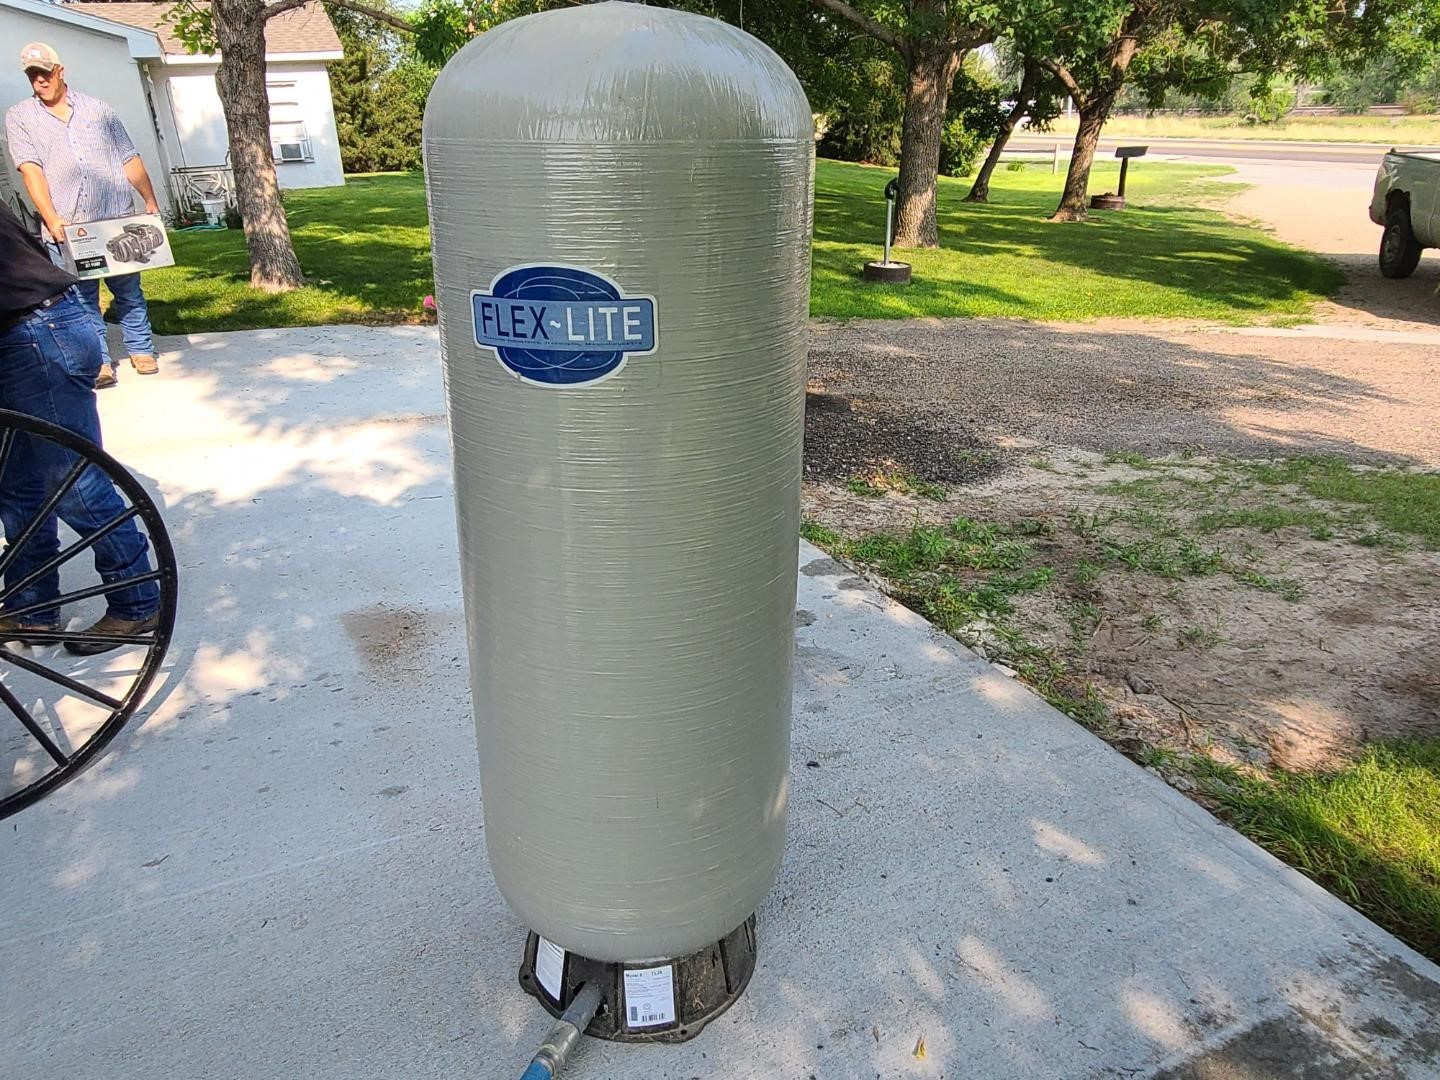 Flex-Lite Water Pressure Tank & CountyLine Pump BigIron Auctions